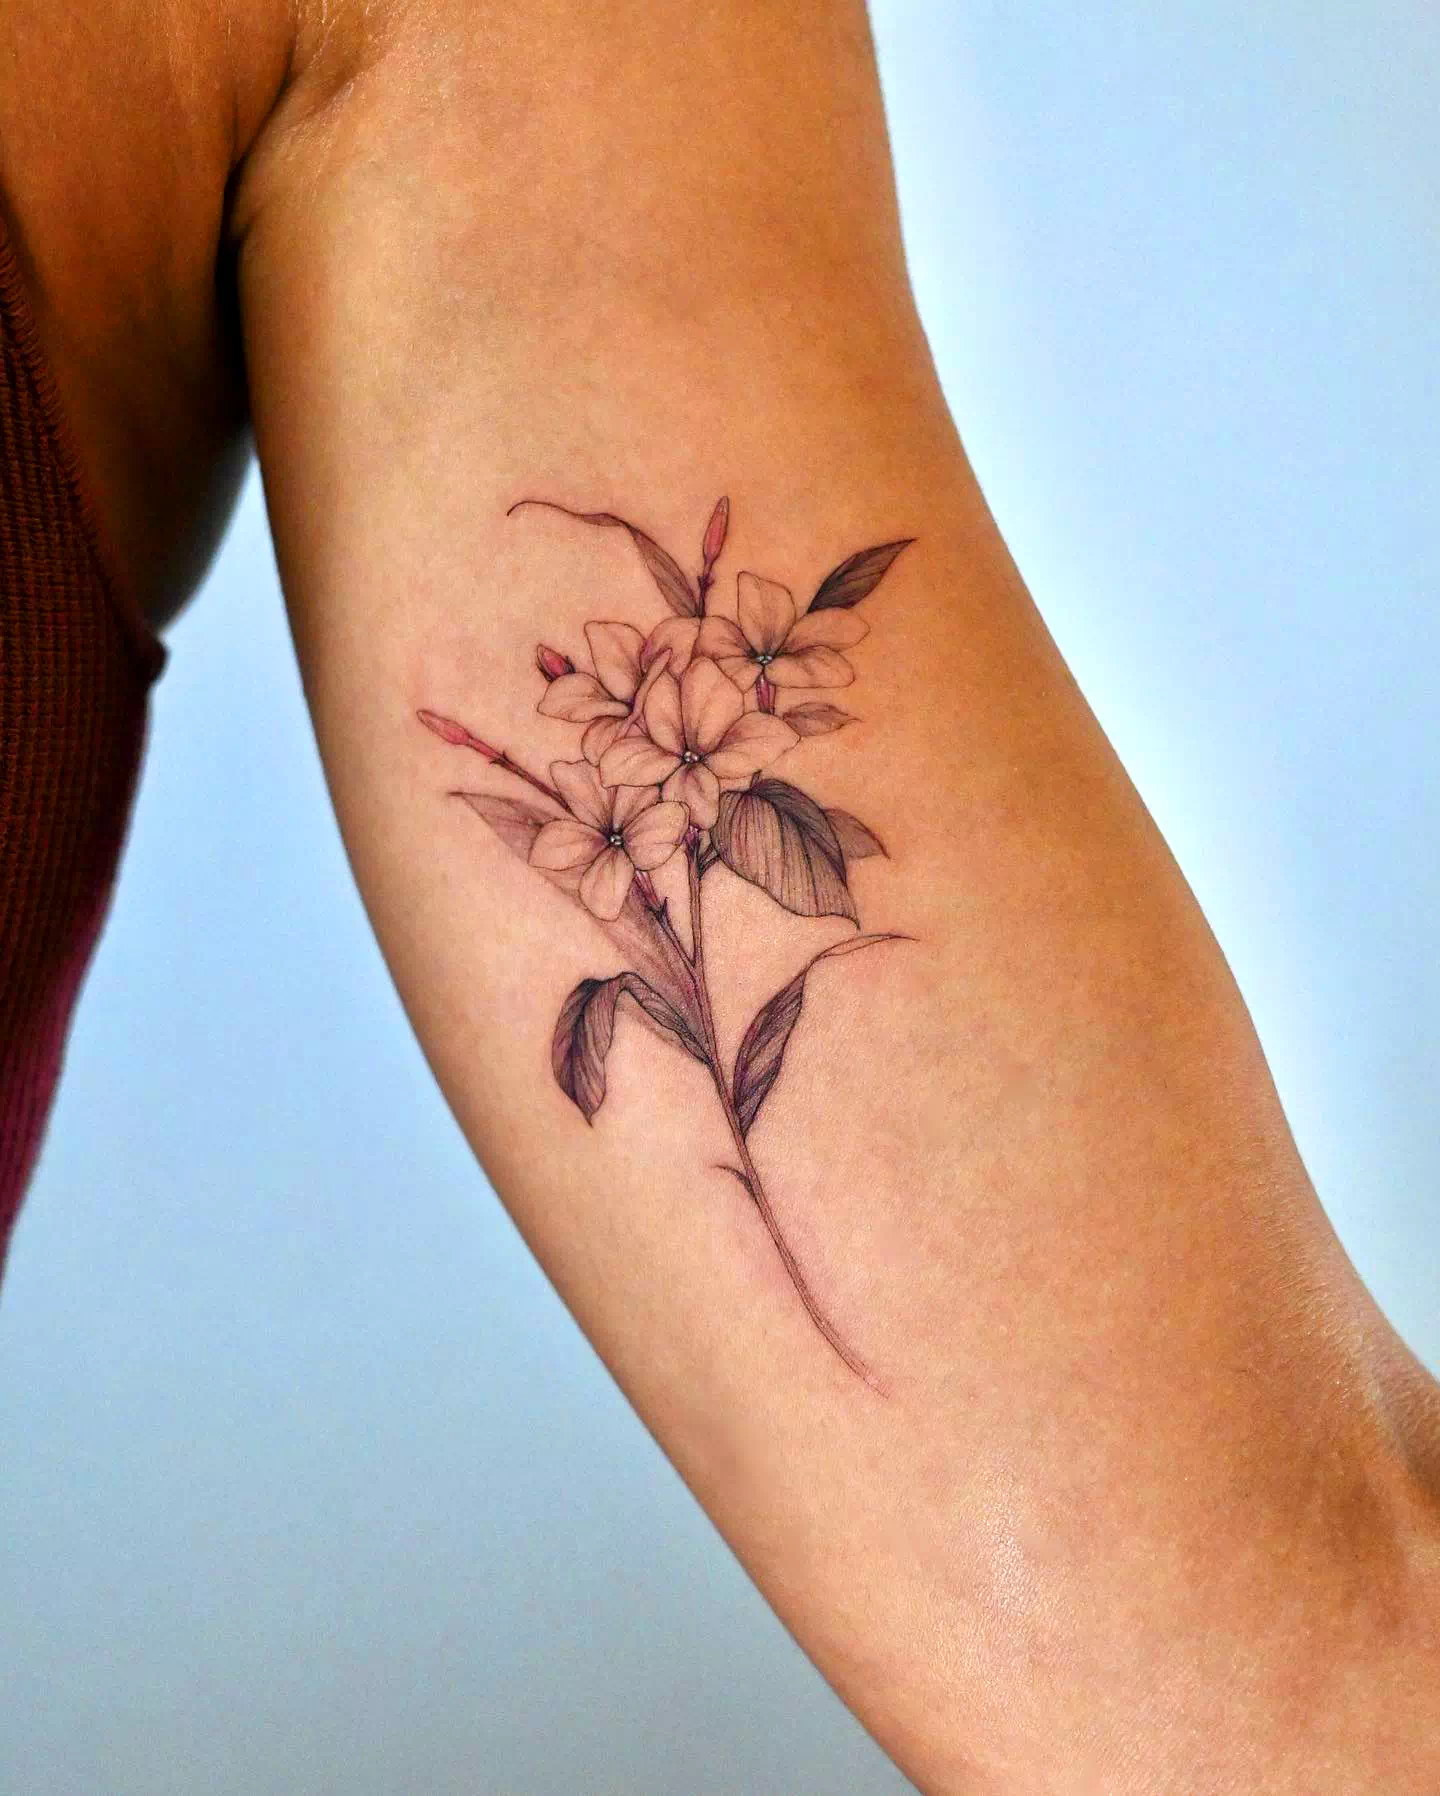 Tatuaje de flor de jazmín Diseño minimalista